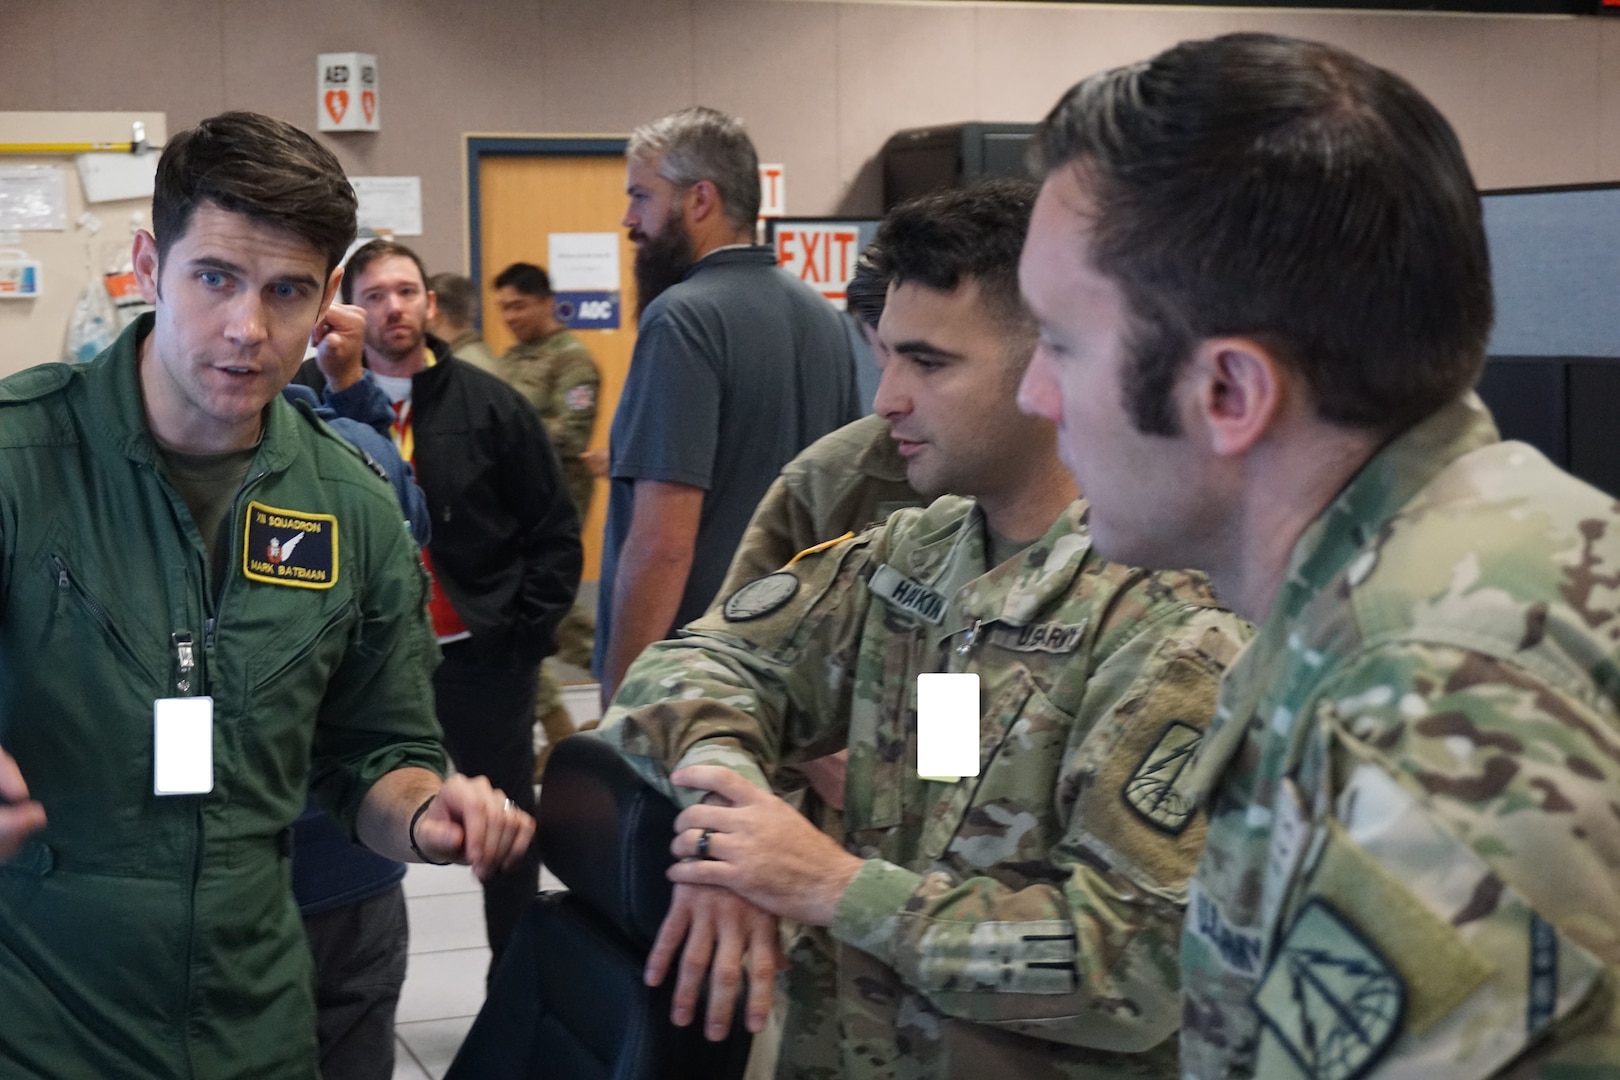 uniformed military members talking near flight simulators